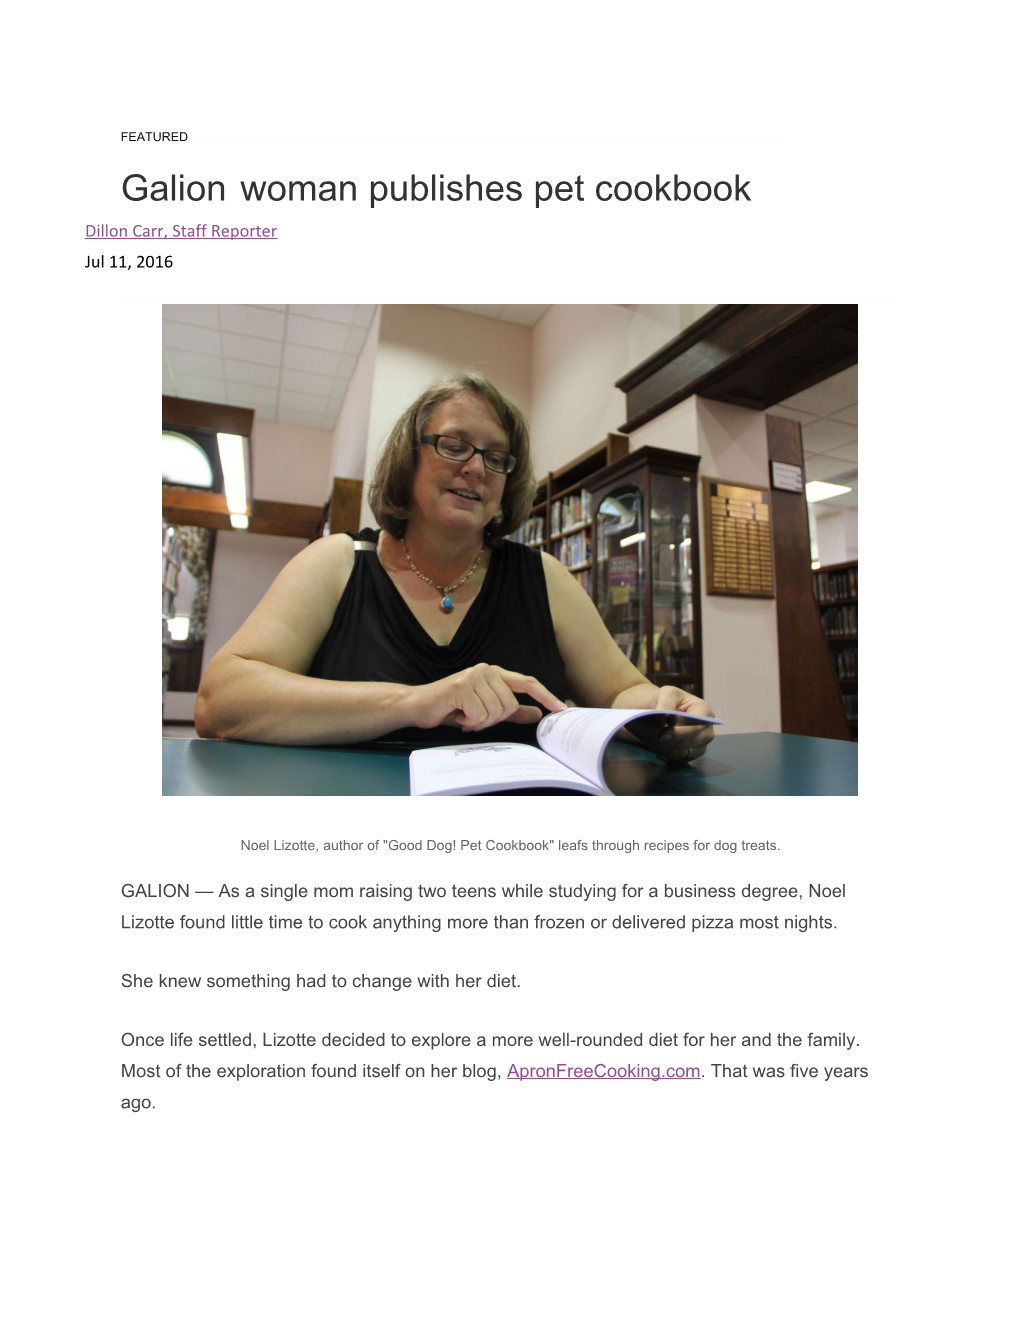 Galion Woman Publishes Pet Cookbook